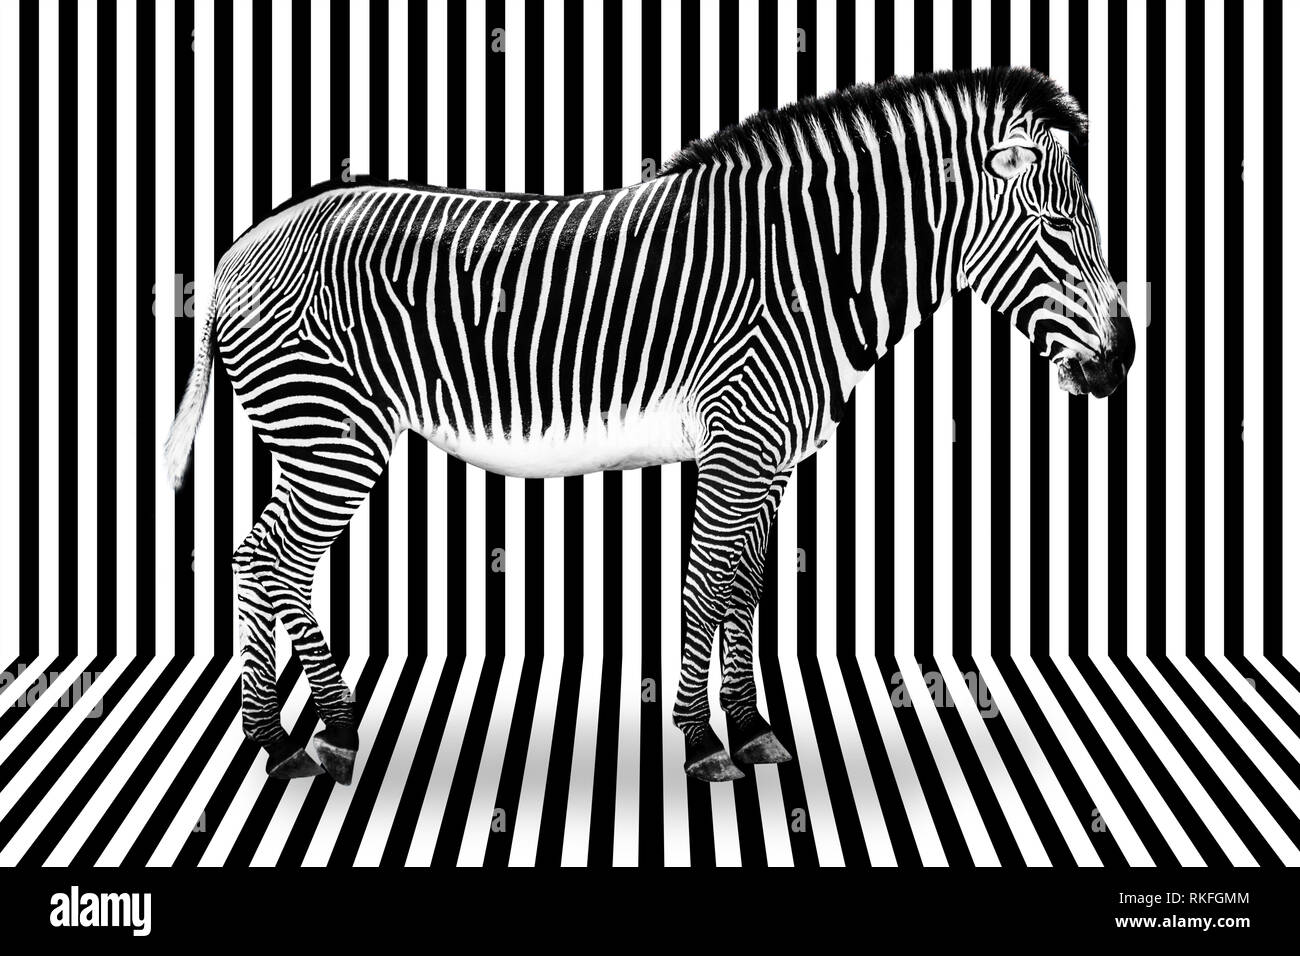 Surreale zebra auf schwarz-weiß gestreiften Hintergrund Stockfoto